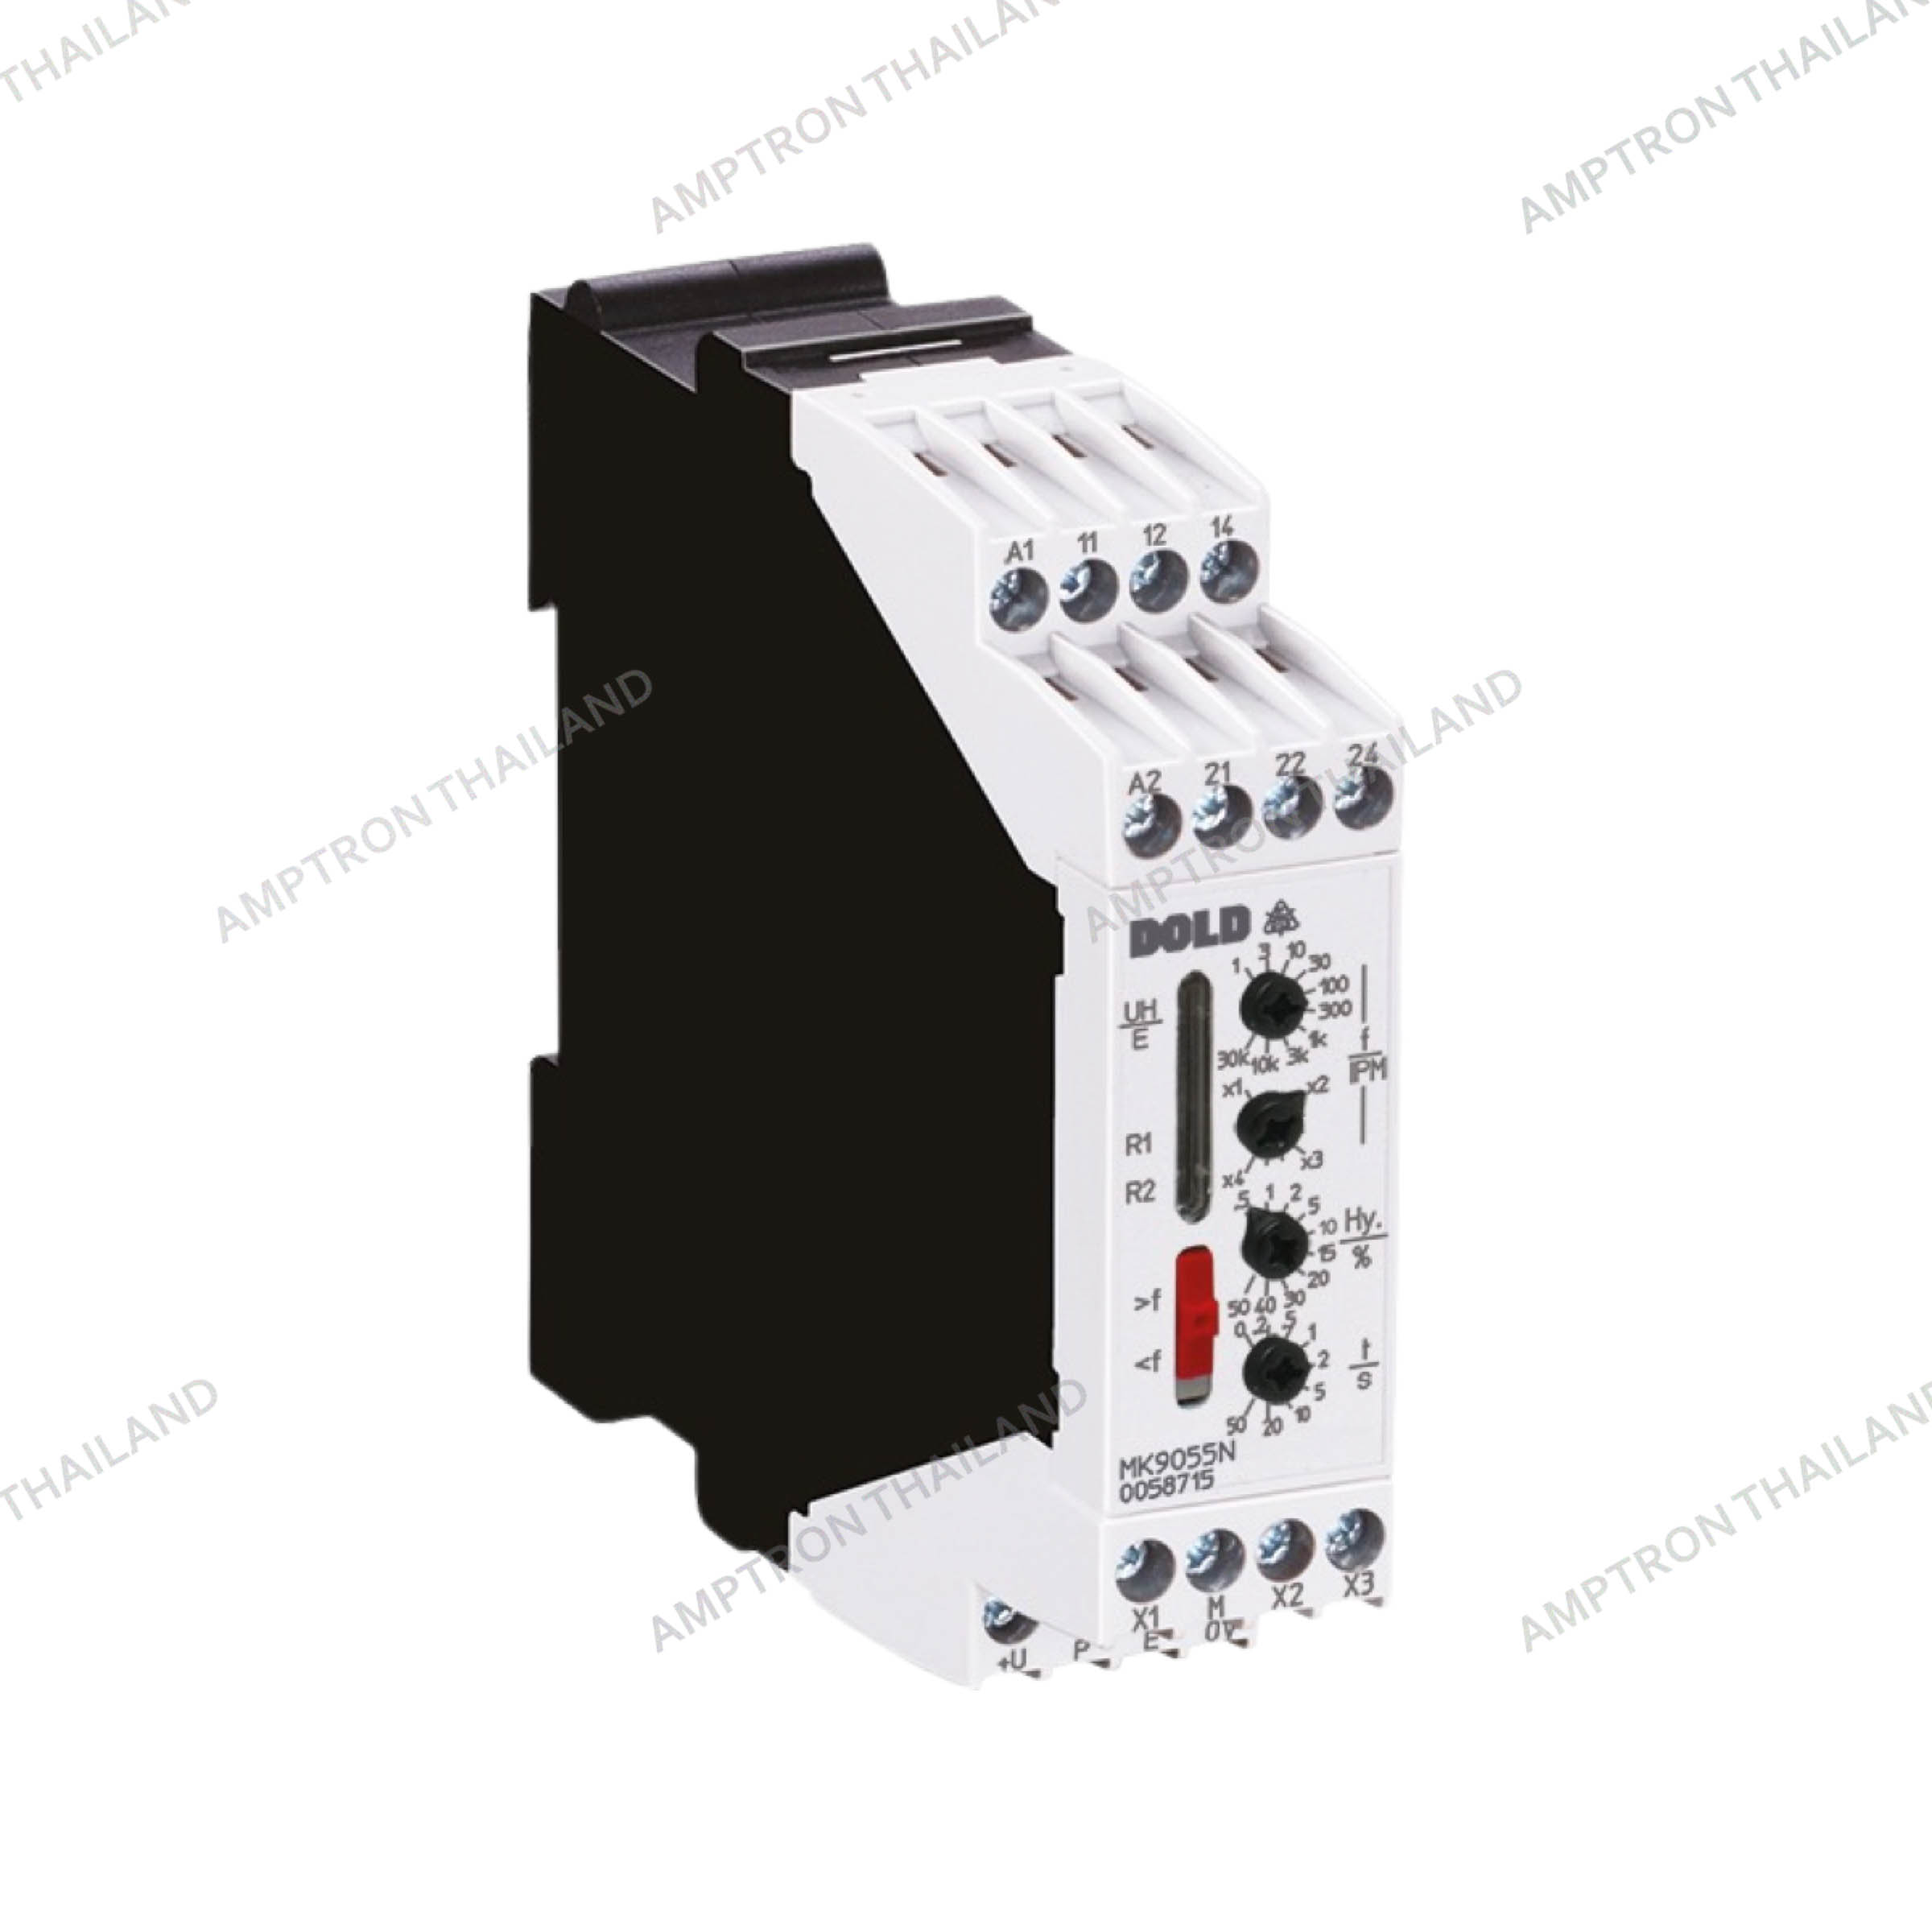 MH 9055 Varimeter Speed Monitor